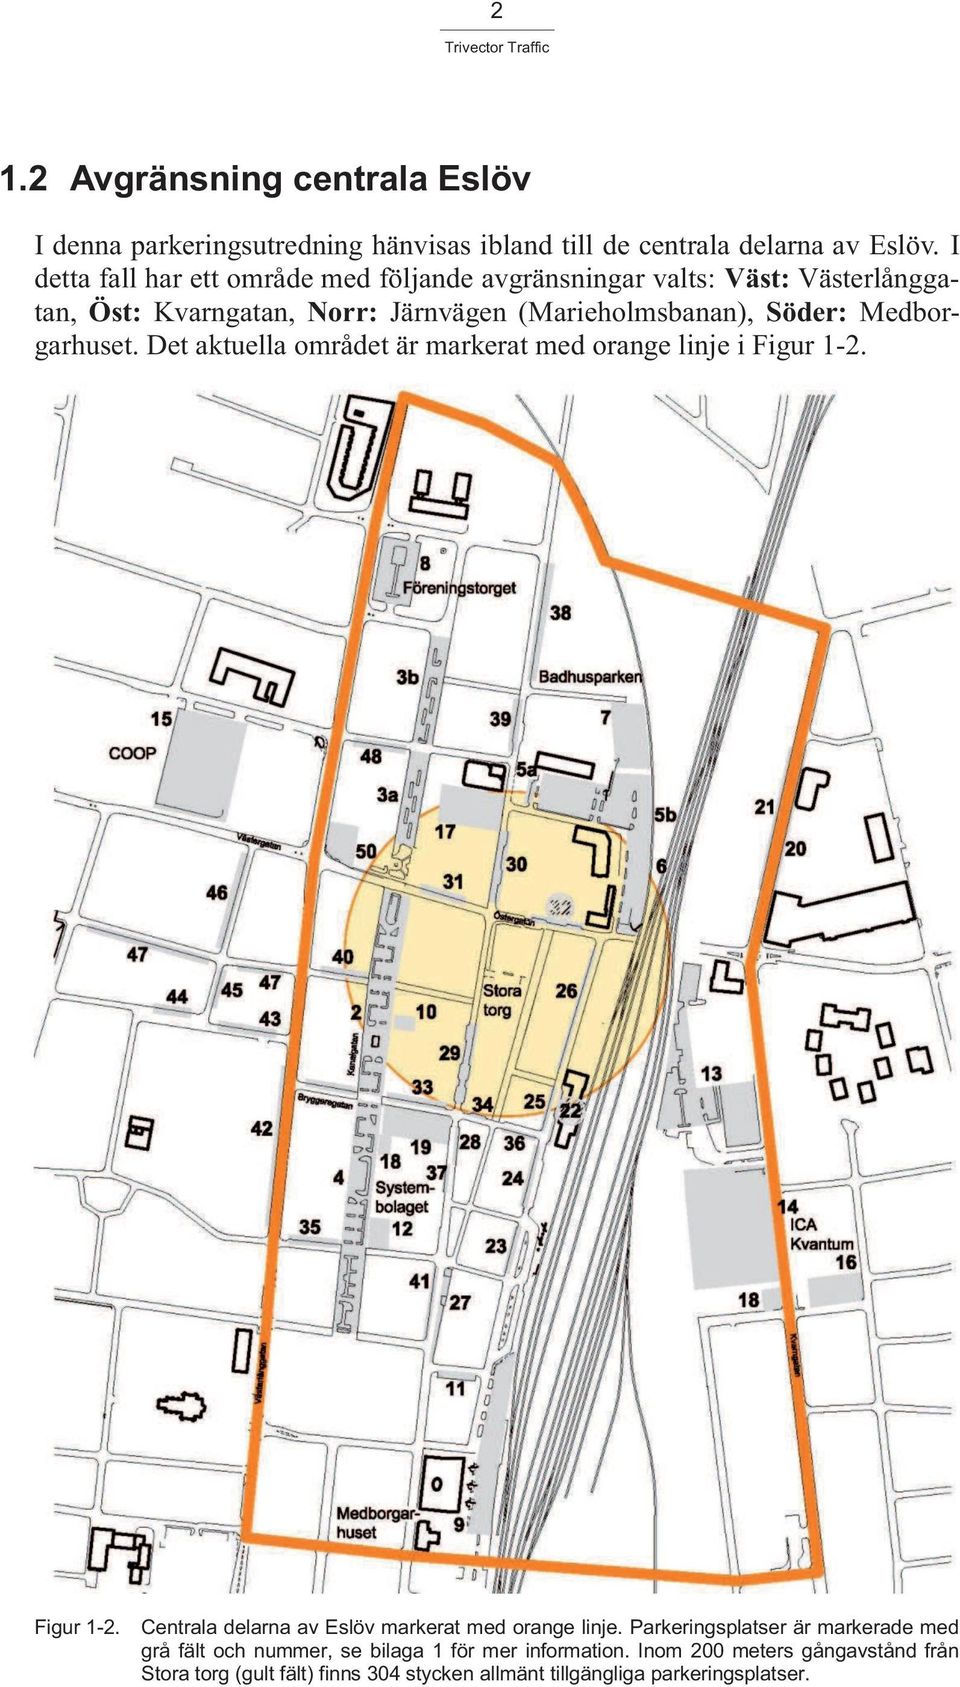 Medborgarhuset. Det aktuella området är markerat med orange linje i Figur 1-2. Figur 1-2. Centrala delarna av Eslöv markerat med orange linje.